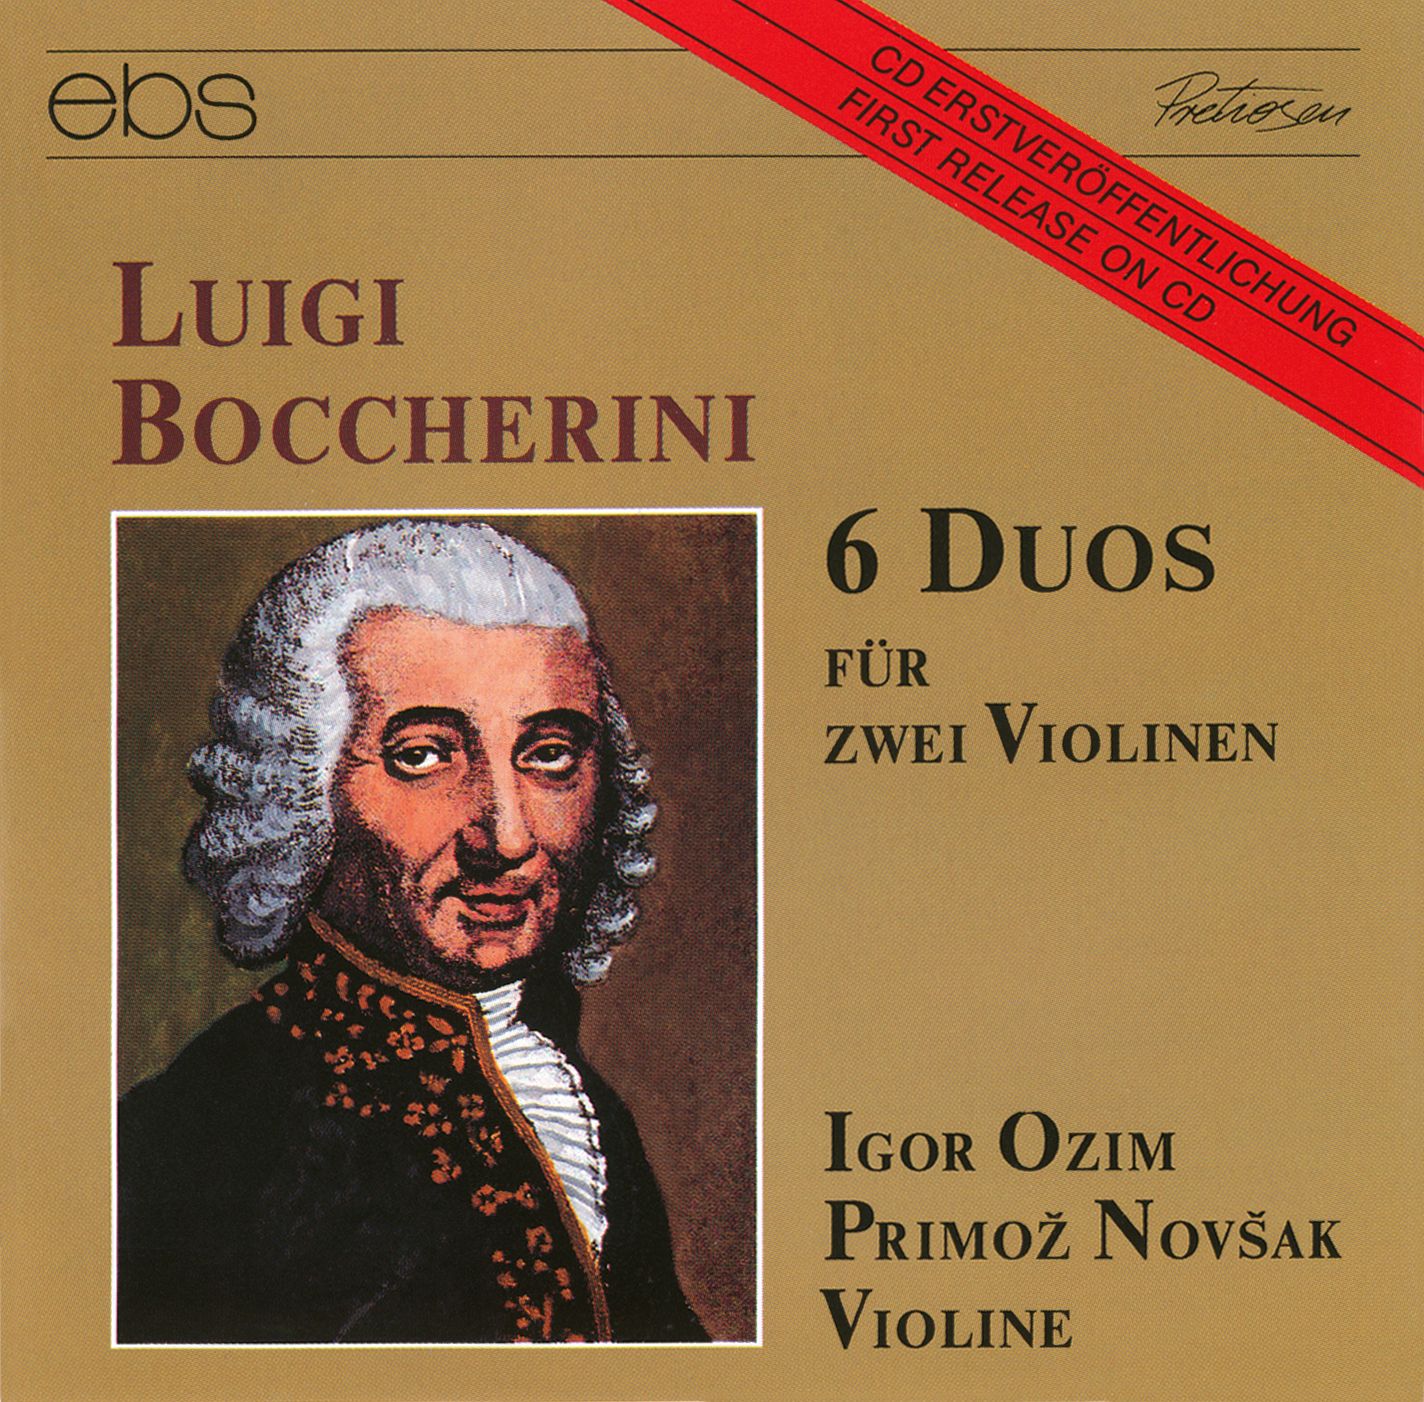 Luigi Boccherini - 6 Duos für 2 Violinen